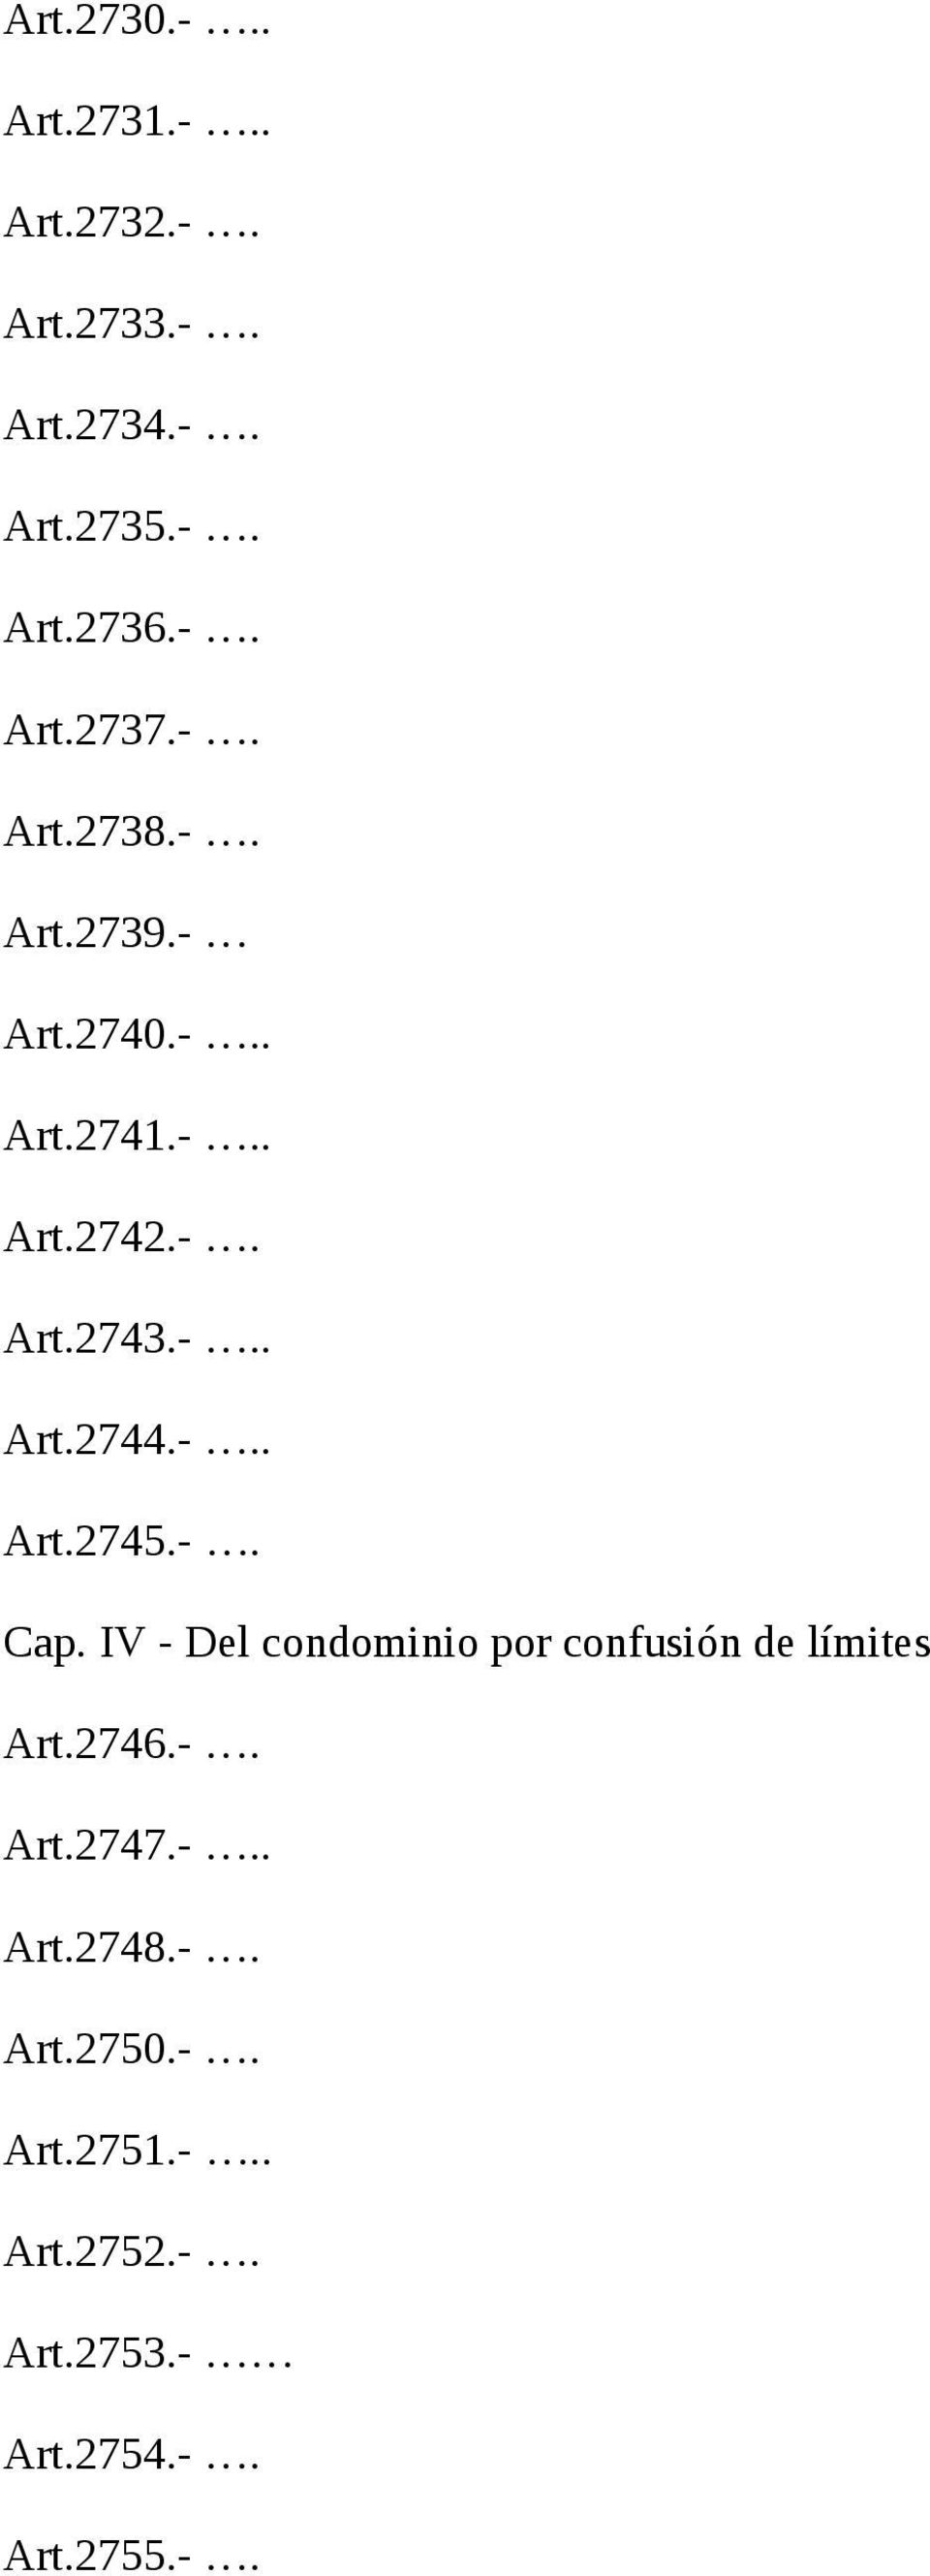 -. Cap. IV - Del condominio por confusión de límites Art.2746.-. Art.2747.-.. Art.2748.-. Art.2750.